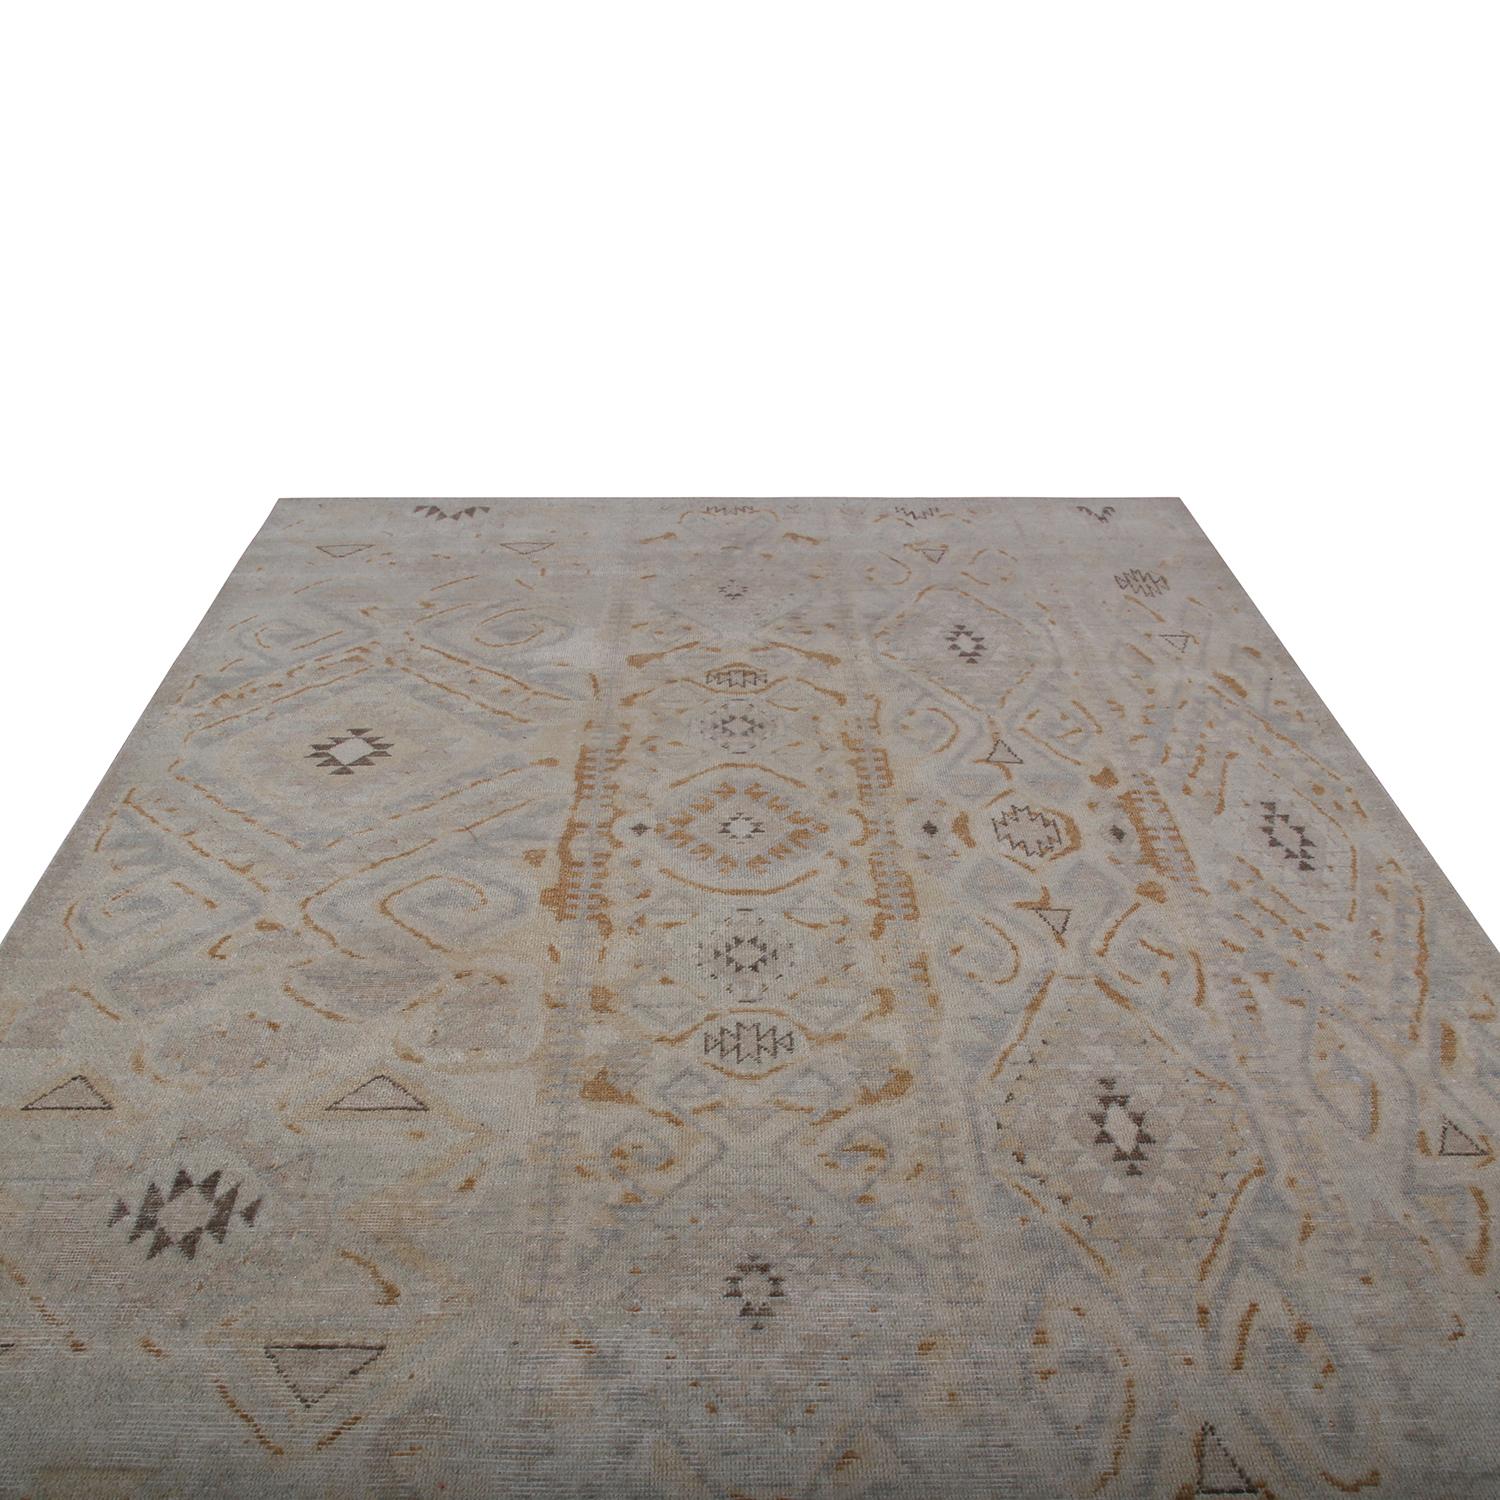 Dieses geometrische Stück gehört zu den jüngsten Ergänzungen der Homage Collection'S von Rug & Kilim, einem ehrgeizigen, kundenorientierten Ansatz, der eine beispiellose Bandbreite internationaler Stile, darunter orientalische Muster mit frischen,